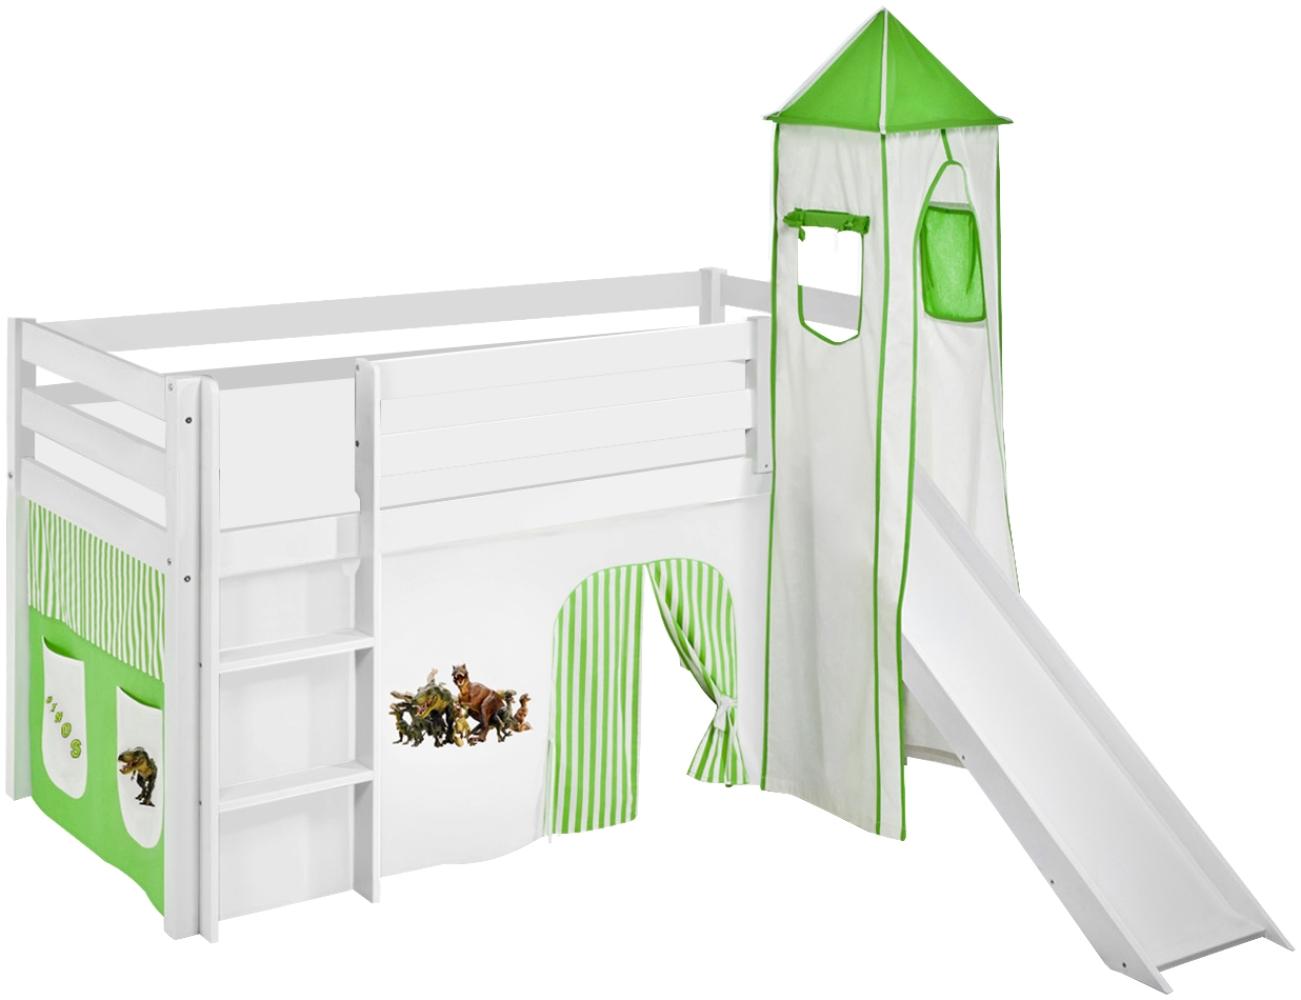 Lilokids 'Jelle' Spielbett 90 x 190 cm, Dinos Grün Beige, Kiefer massiv, mit Turm, Rutsche und Vorhang Bild 1